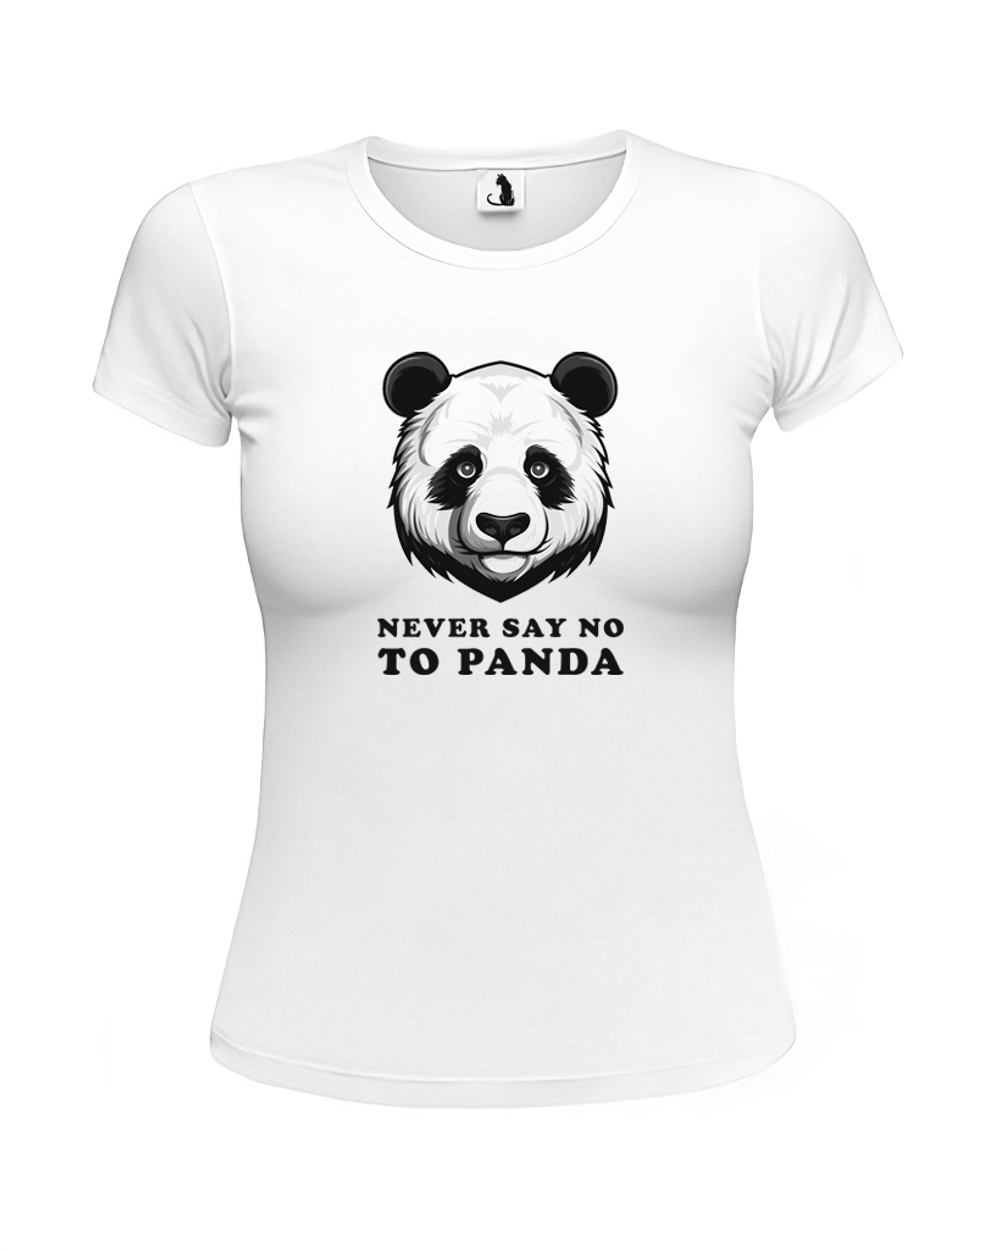 Футболка с пандой Never say no to panda женская приталенная белая